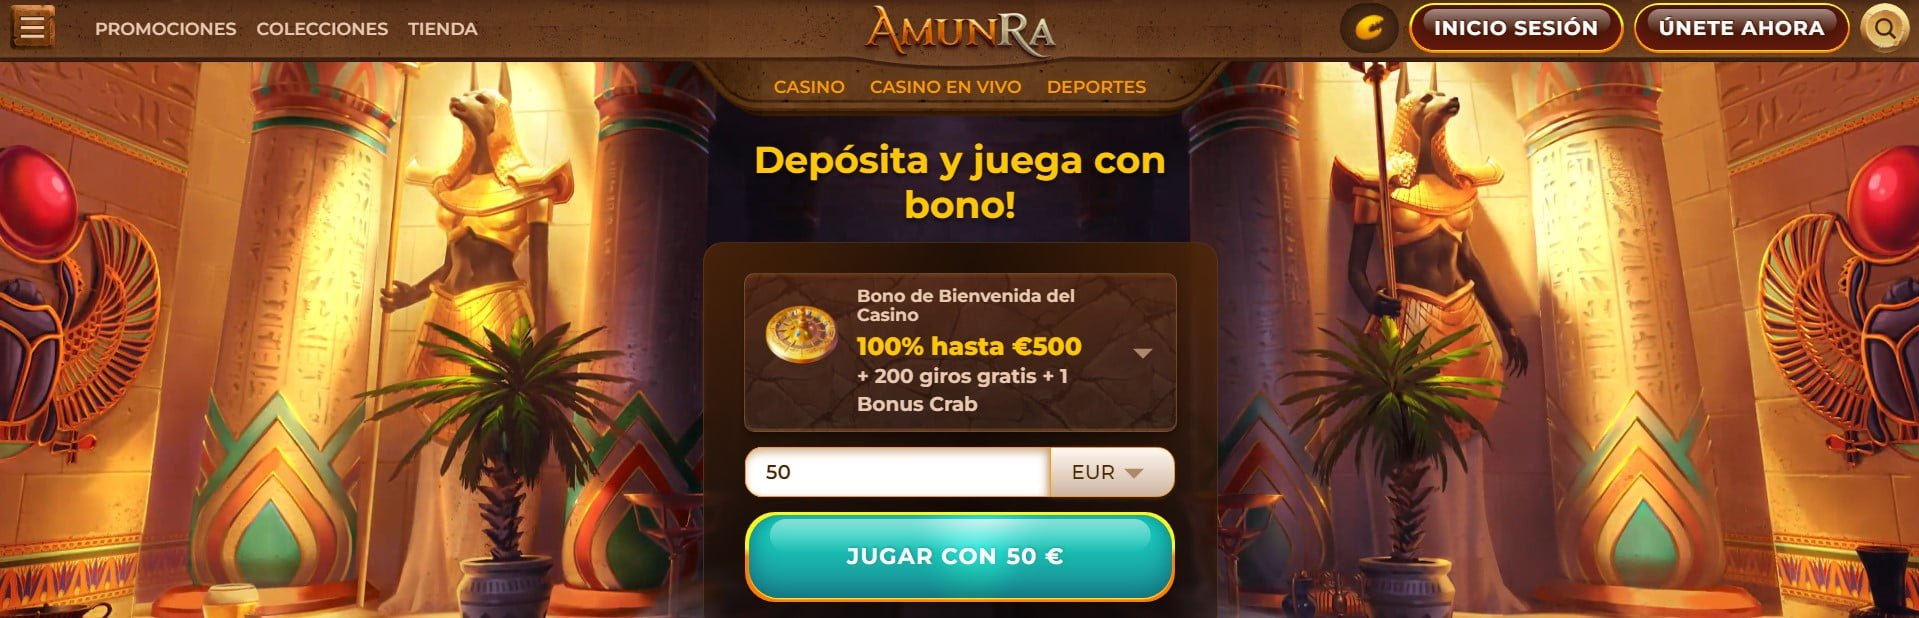 Bonos y promociones en el casino Amunra